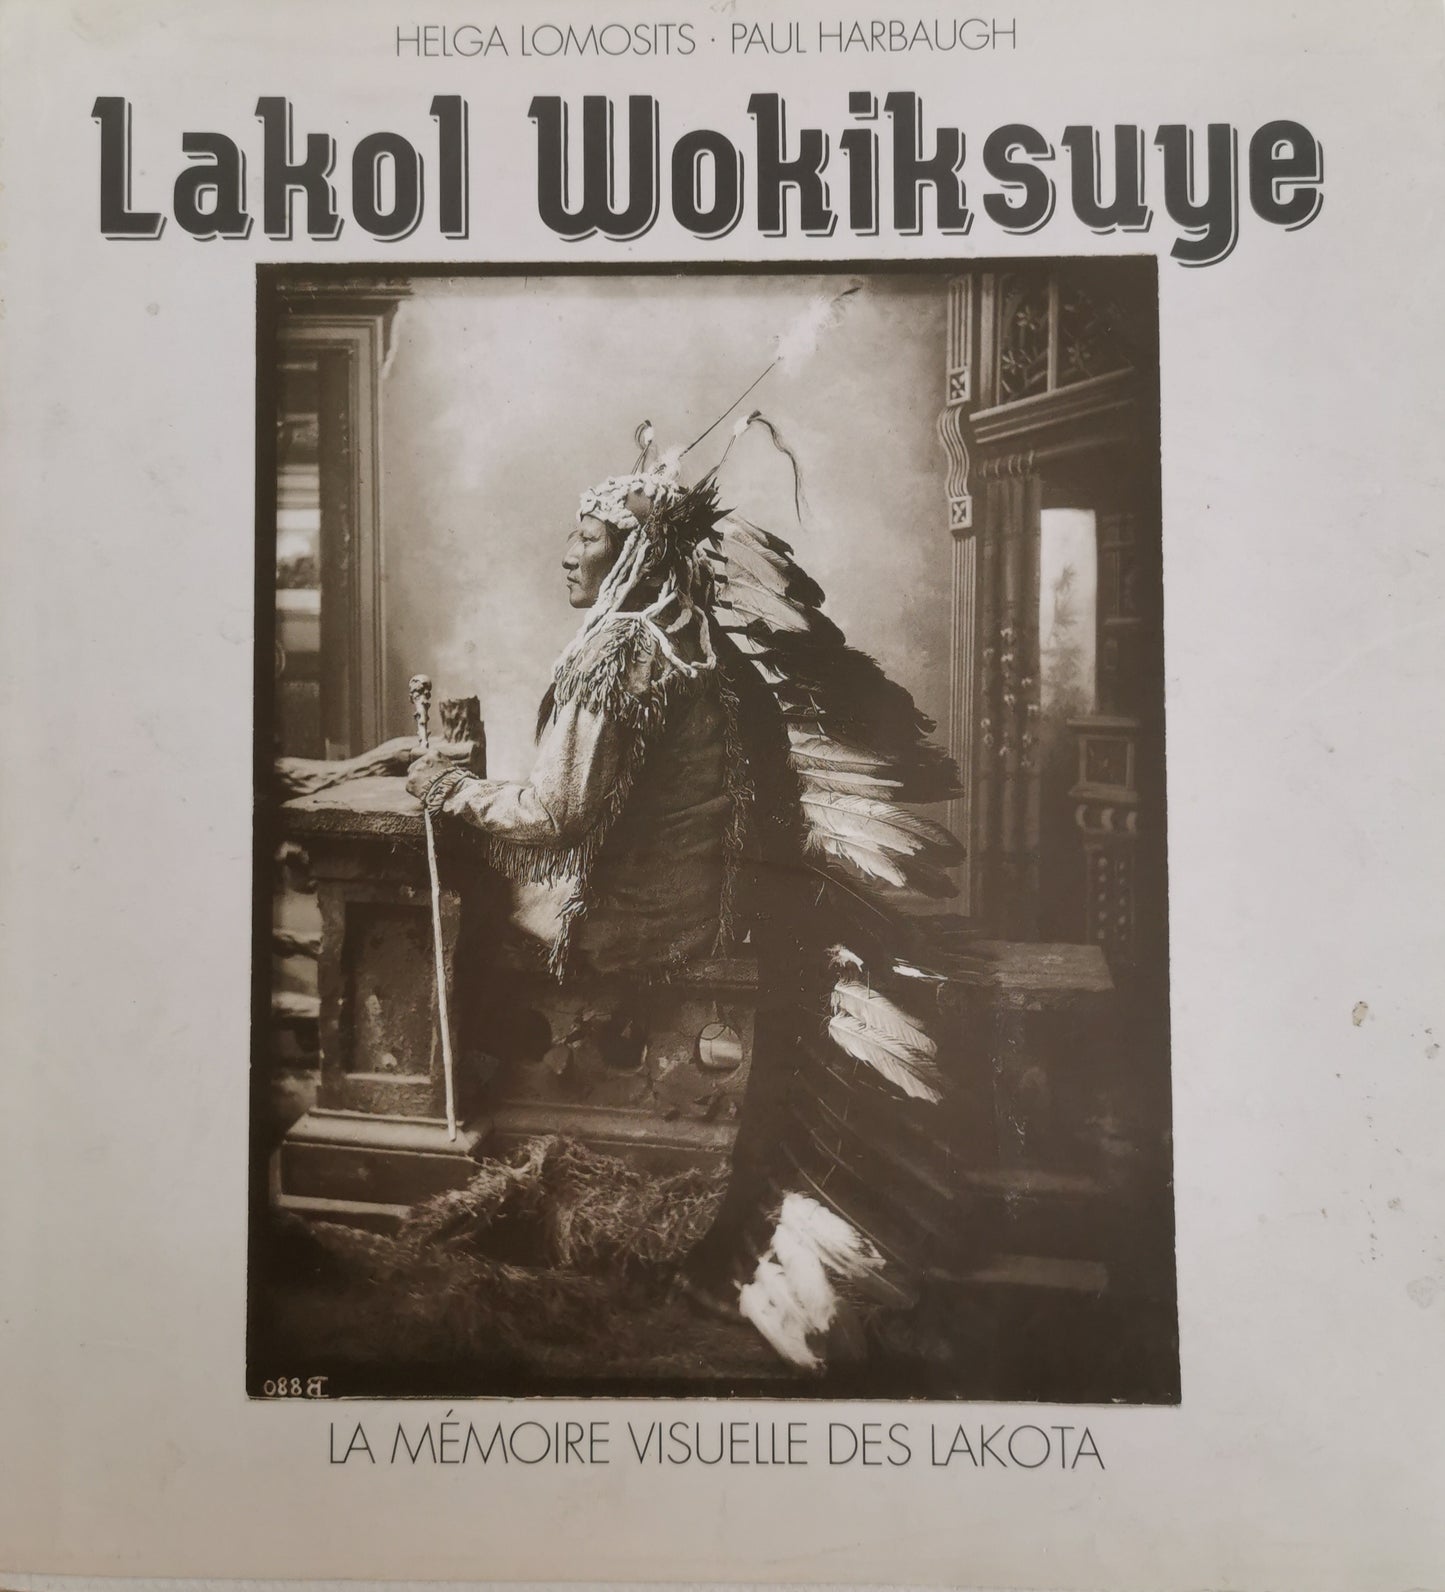 Lako Wokiksuge, La mémoire visuelle des Lakota [exposition Europe], Helga Lomosits, Paul Harbaugh, ed. Les indiennes de Nîmes, Mistral, 1993.